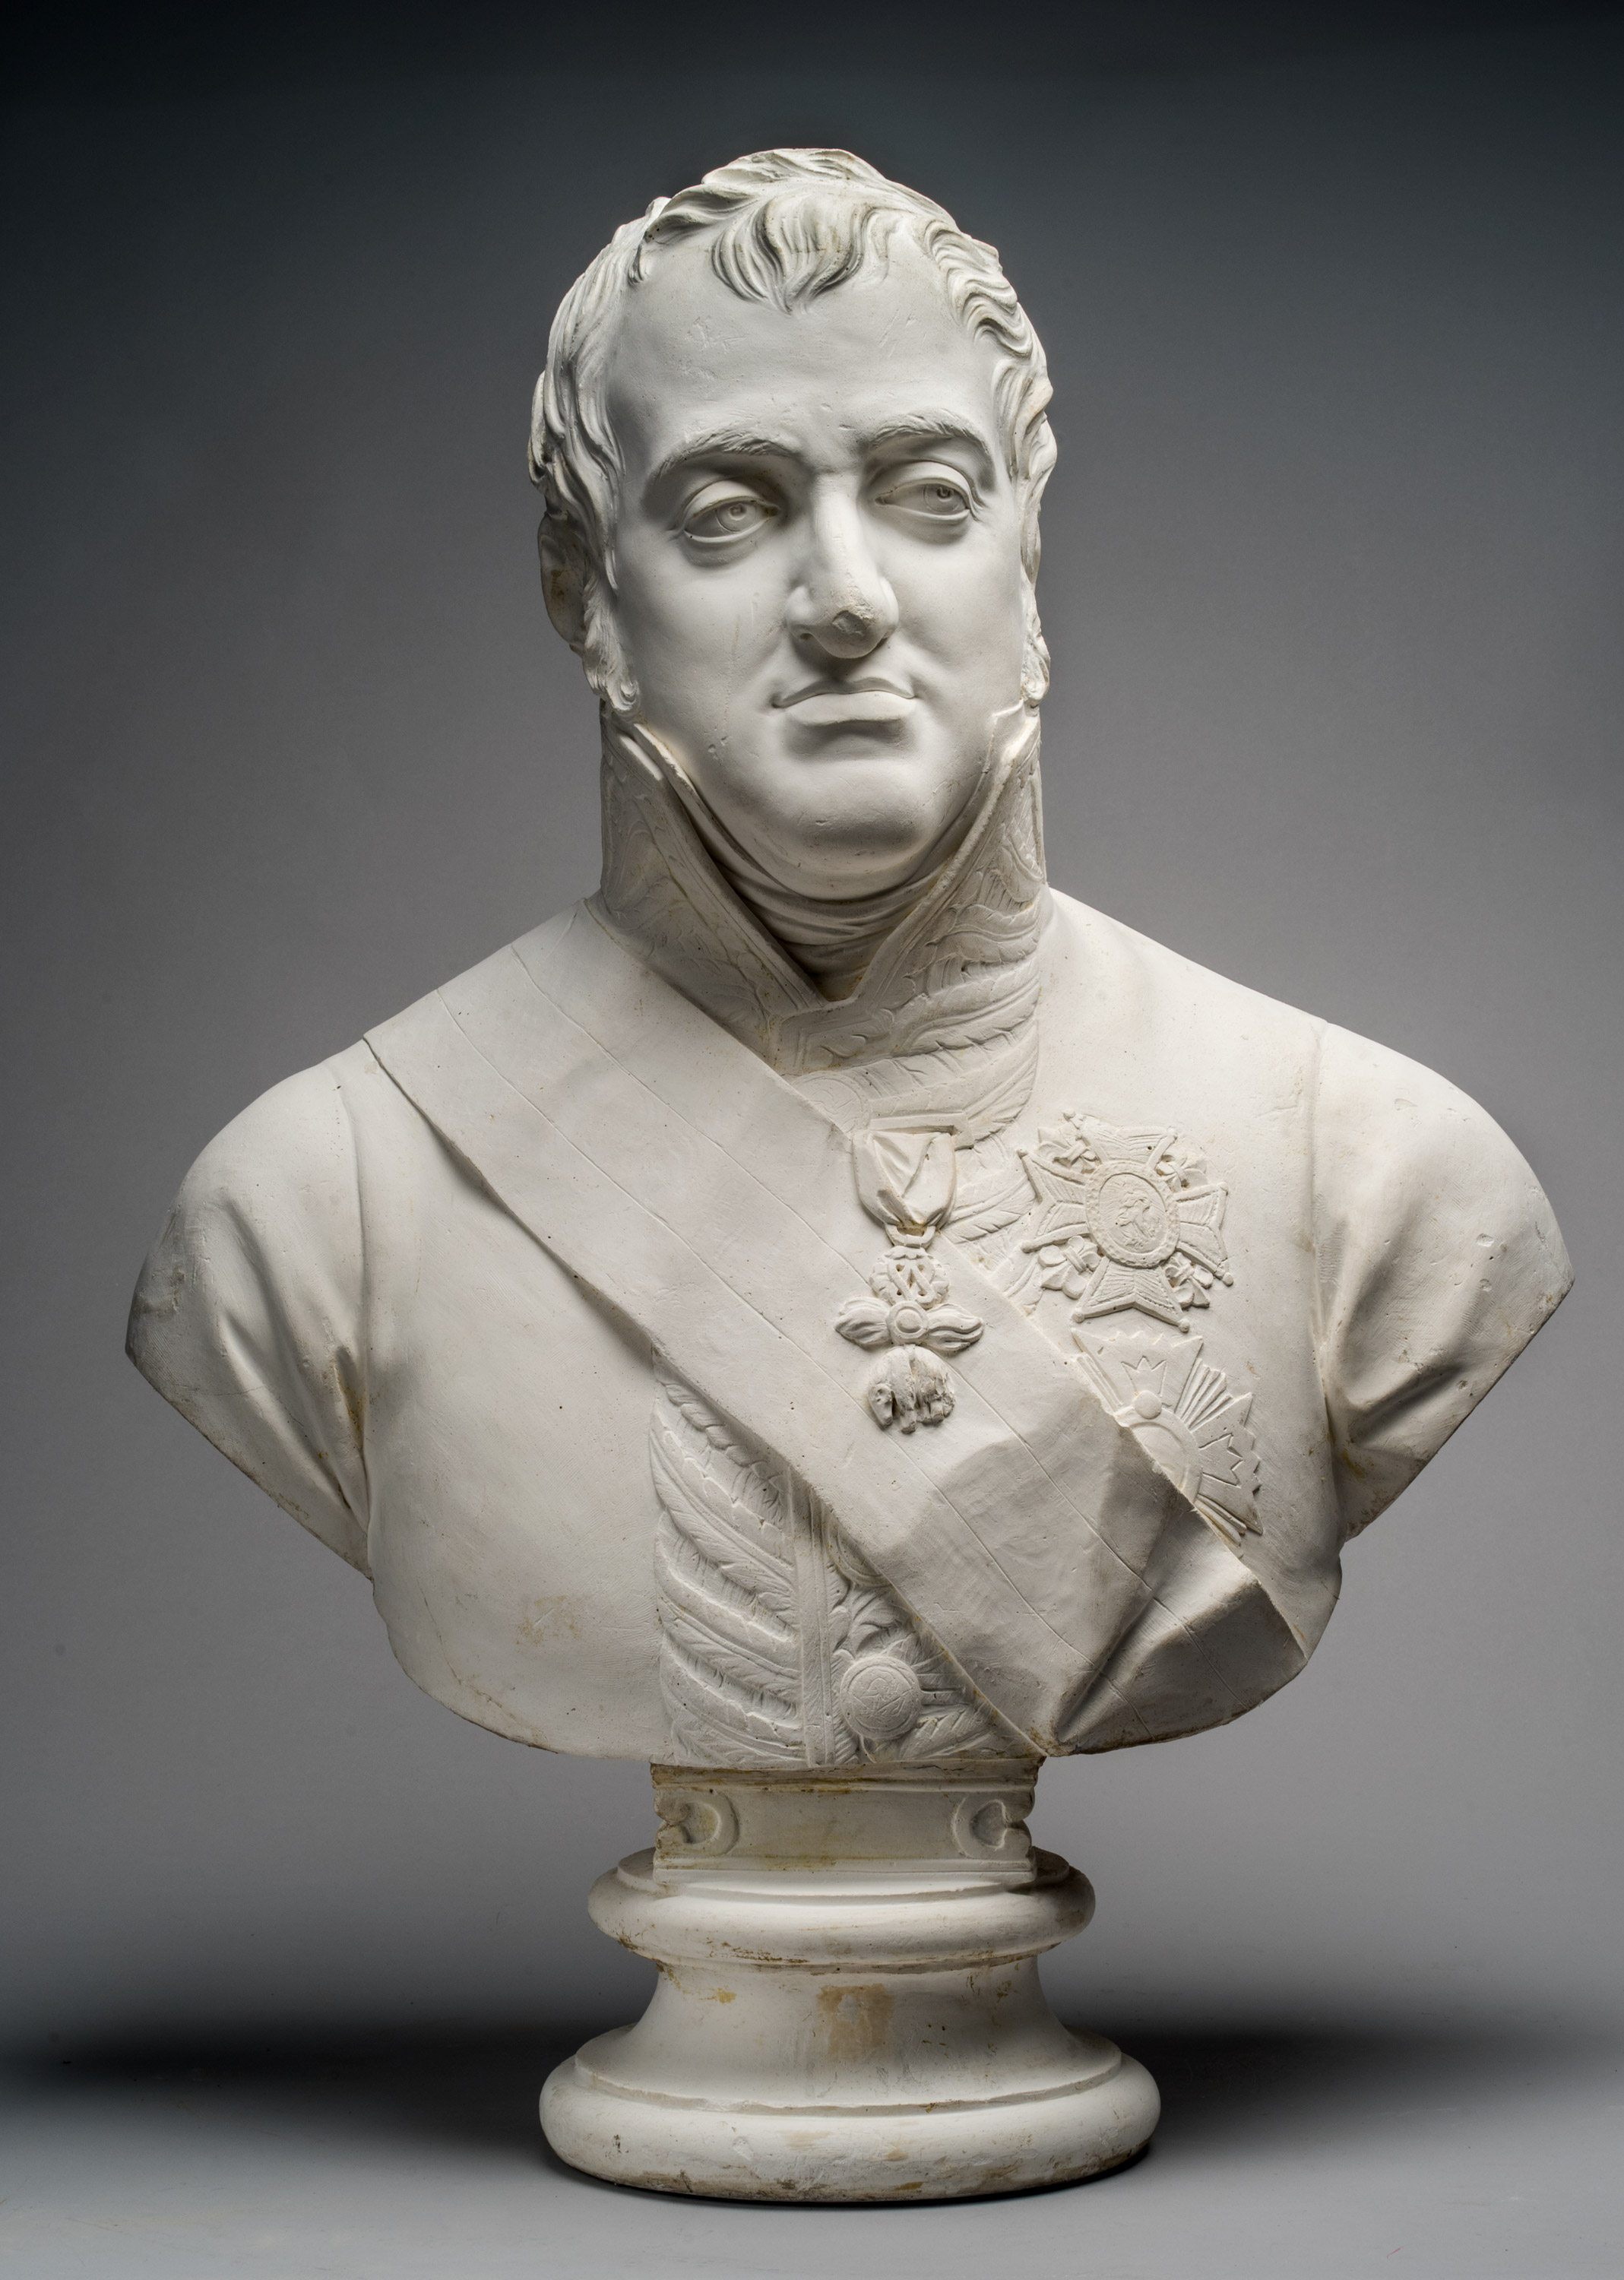 De qué material está hecho el busto de los Premios Goya?